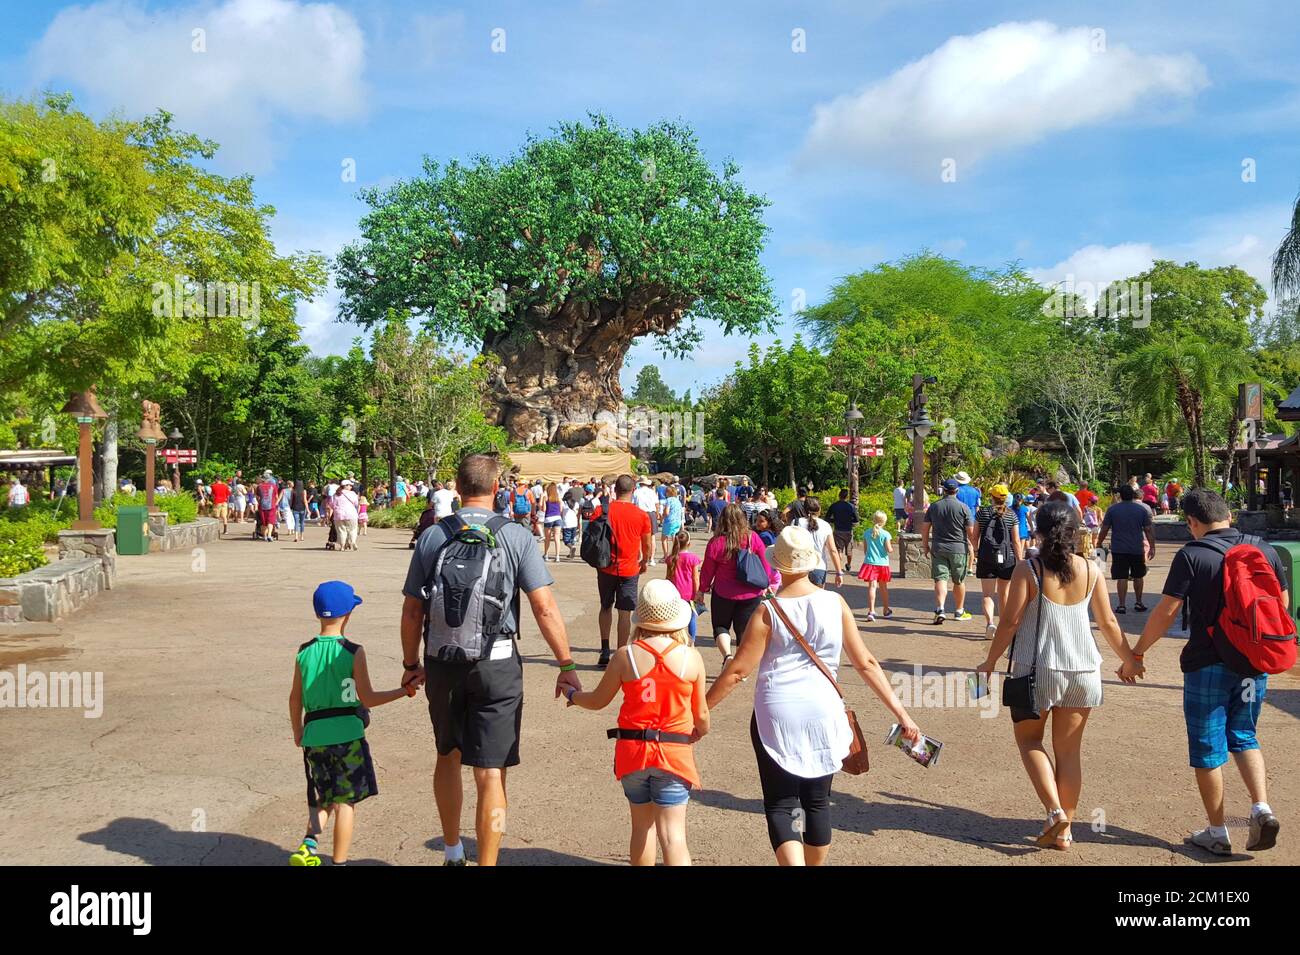 Los clientes de Disney World se dirigen al árbol de la vida en el Reino animal, área de Discovery Island, Orlando, Florida, Estados Unidos Foto de stock